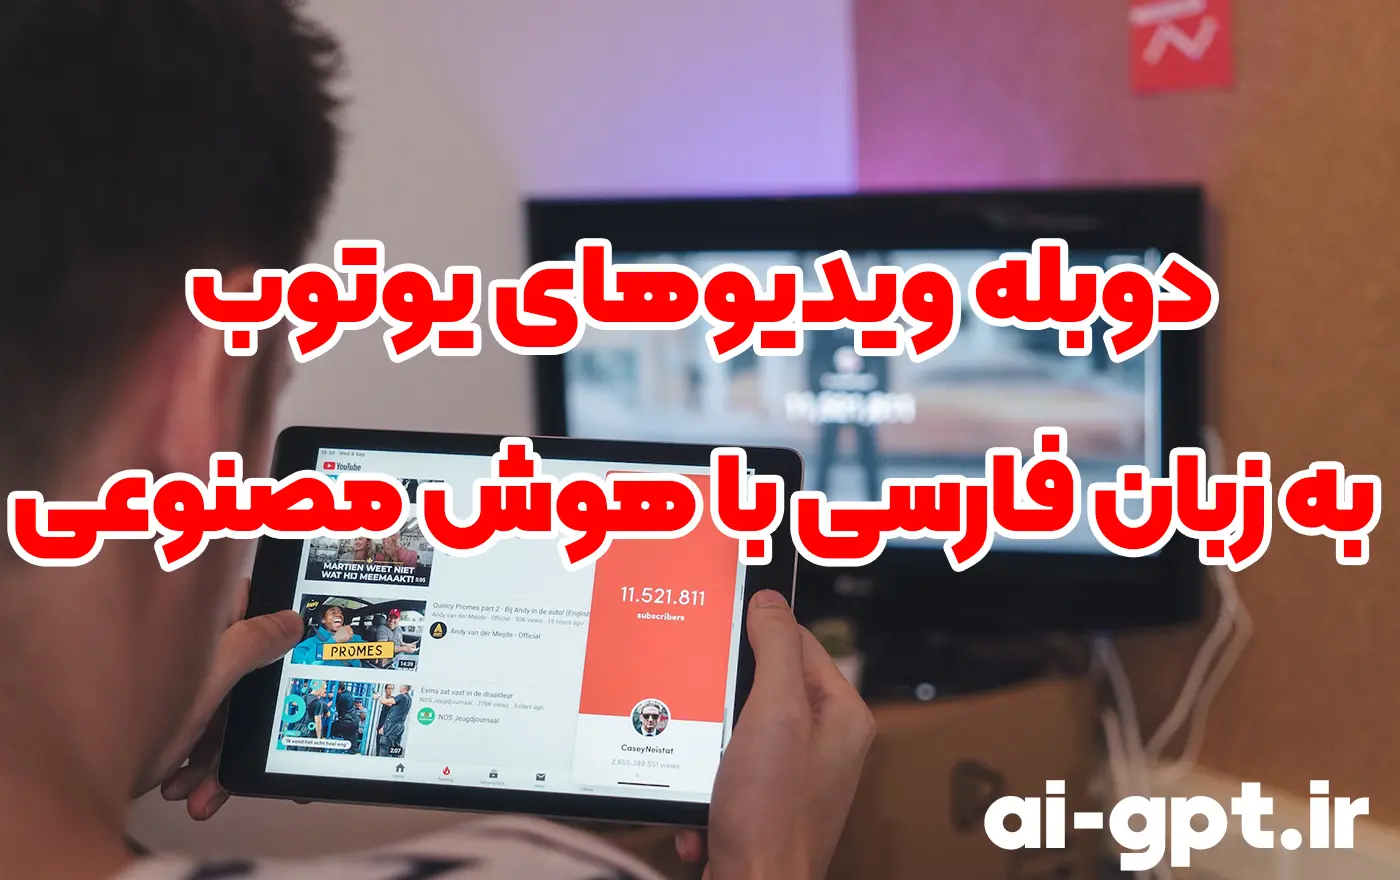 دوبله ویدیوهای یوتوب به زبان فارسی با هوش مصنوعی